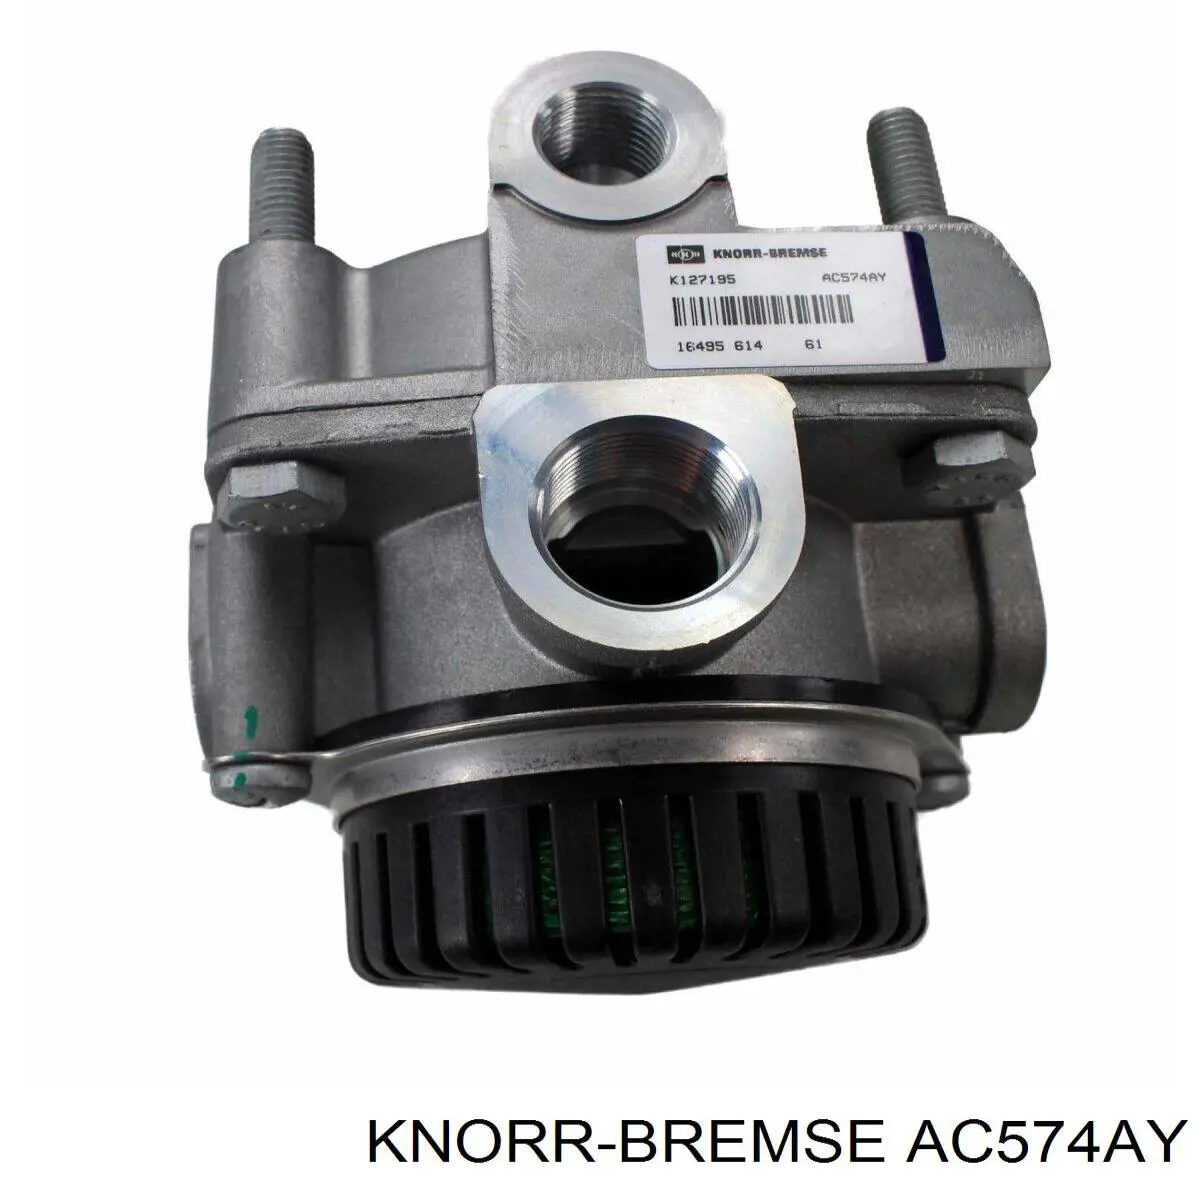 AC574AY Knorr-bremse ускорительный клапан пневмосистемы